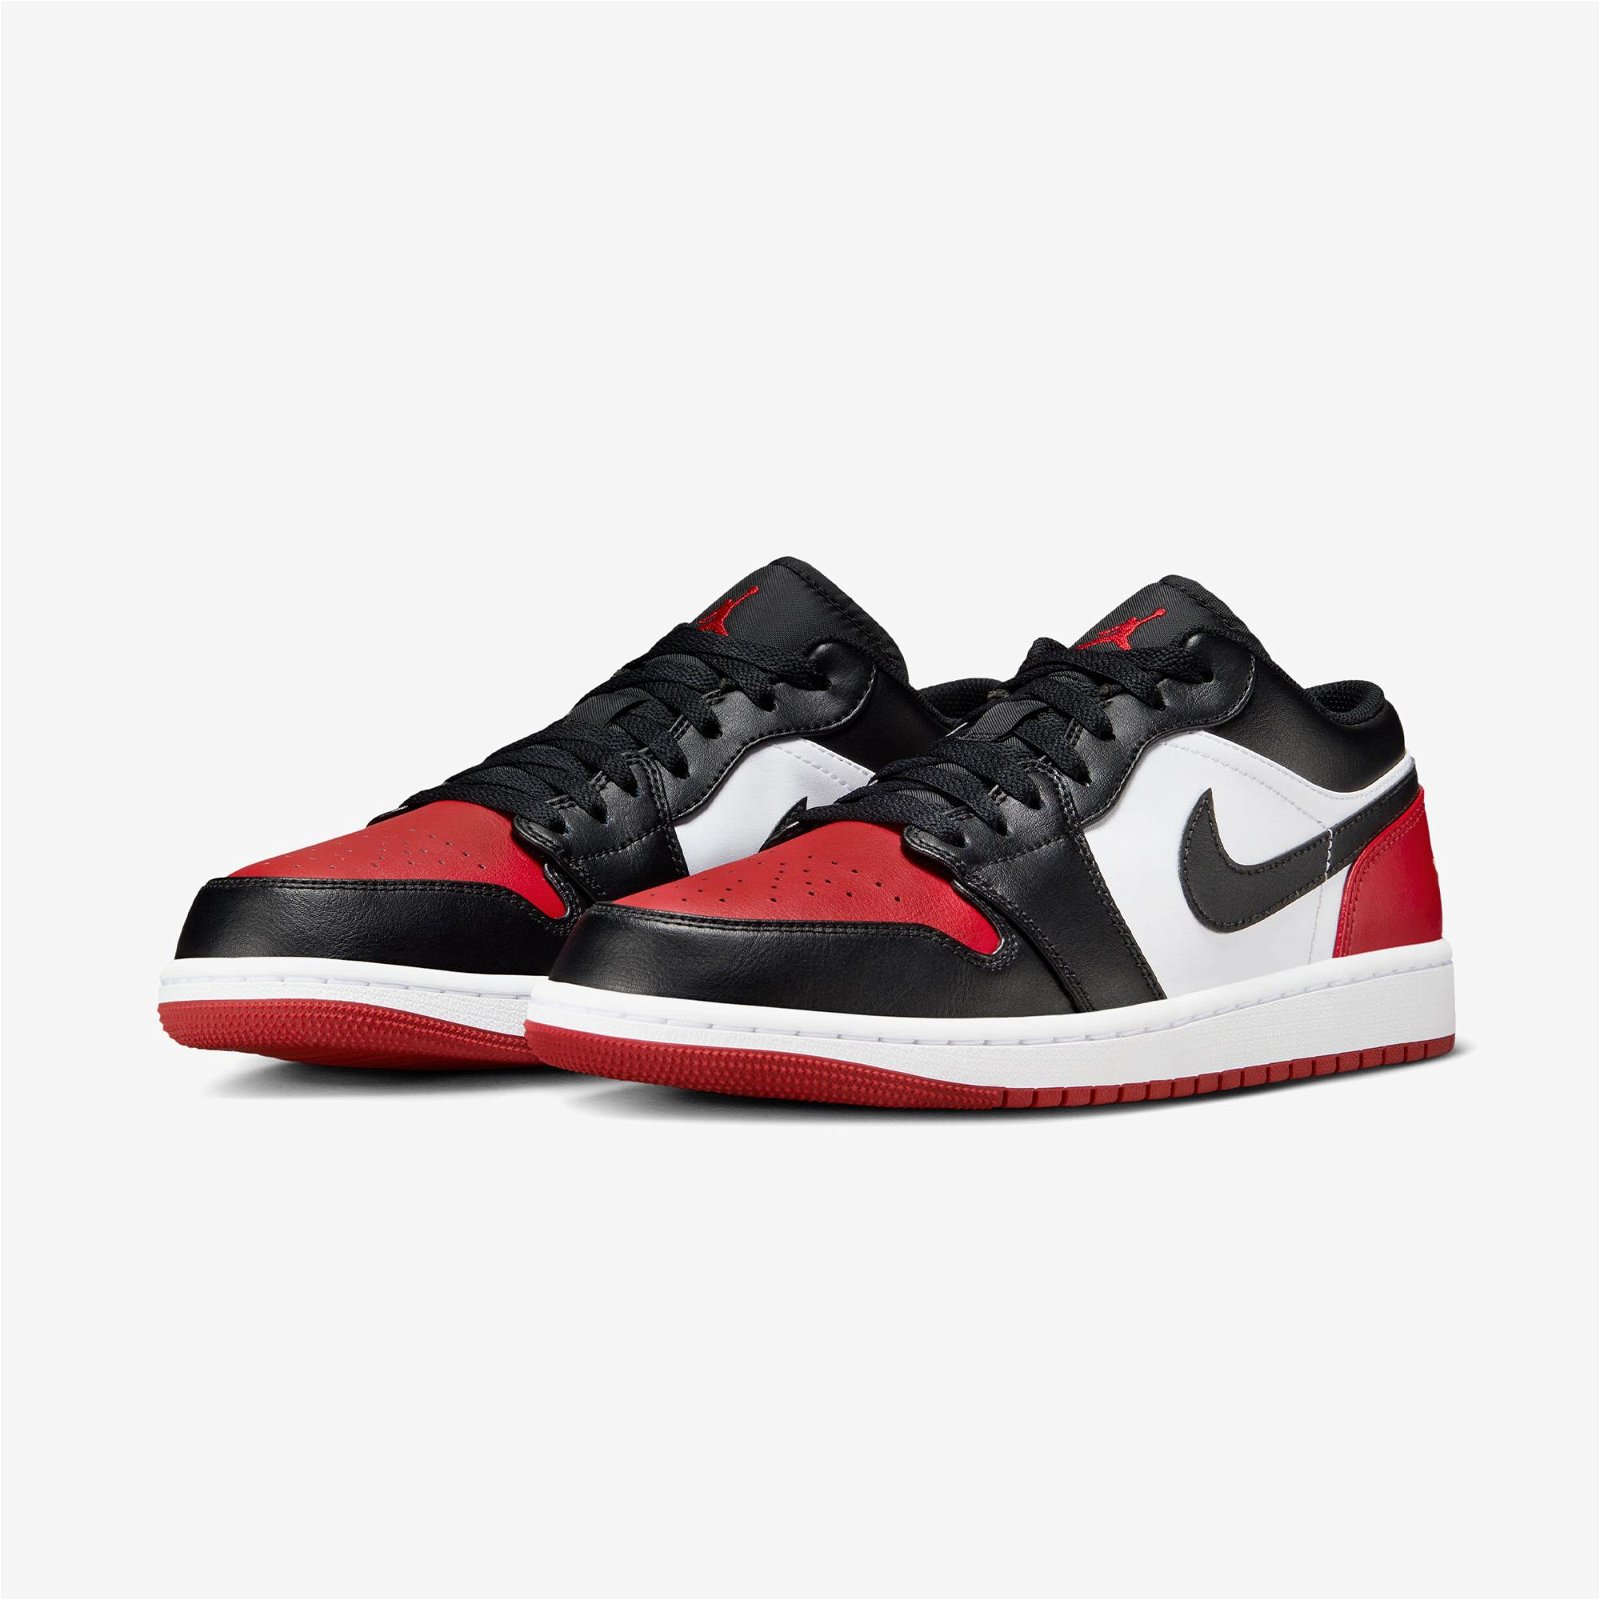 Jordan Air 1 Low Erkek Siyah - Kırmızı Spor Ayakkabı